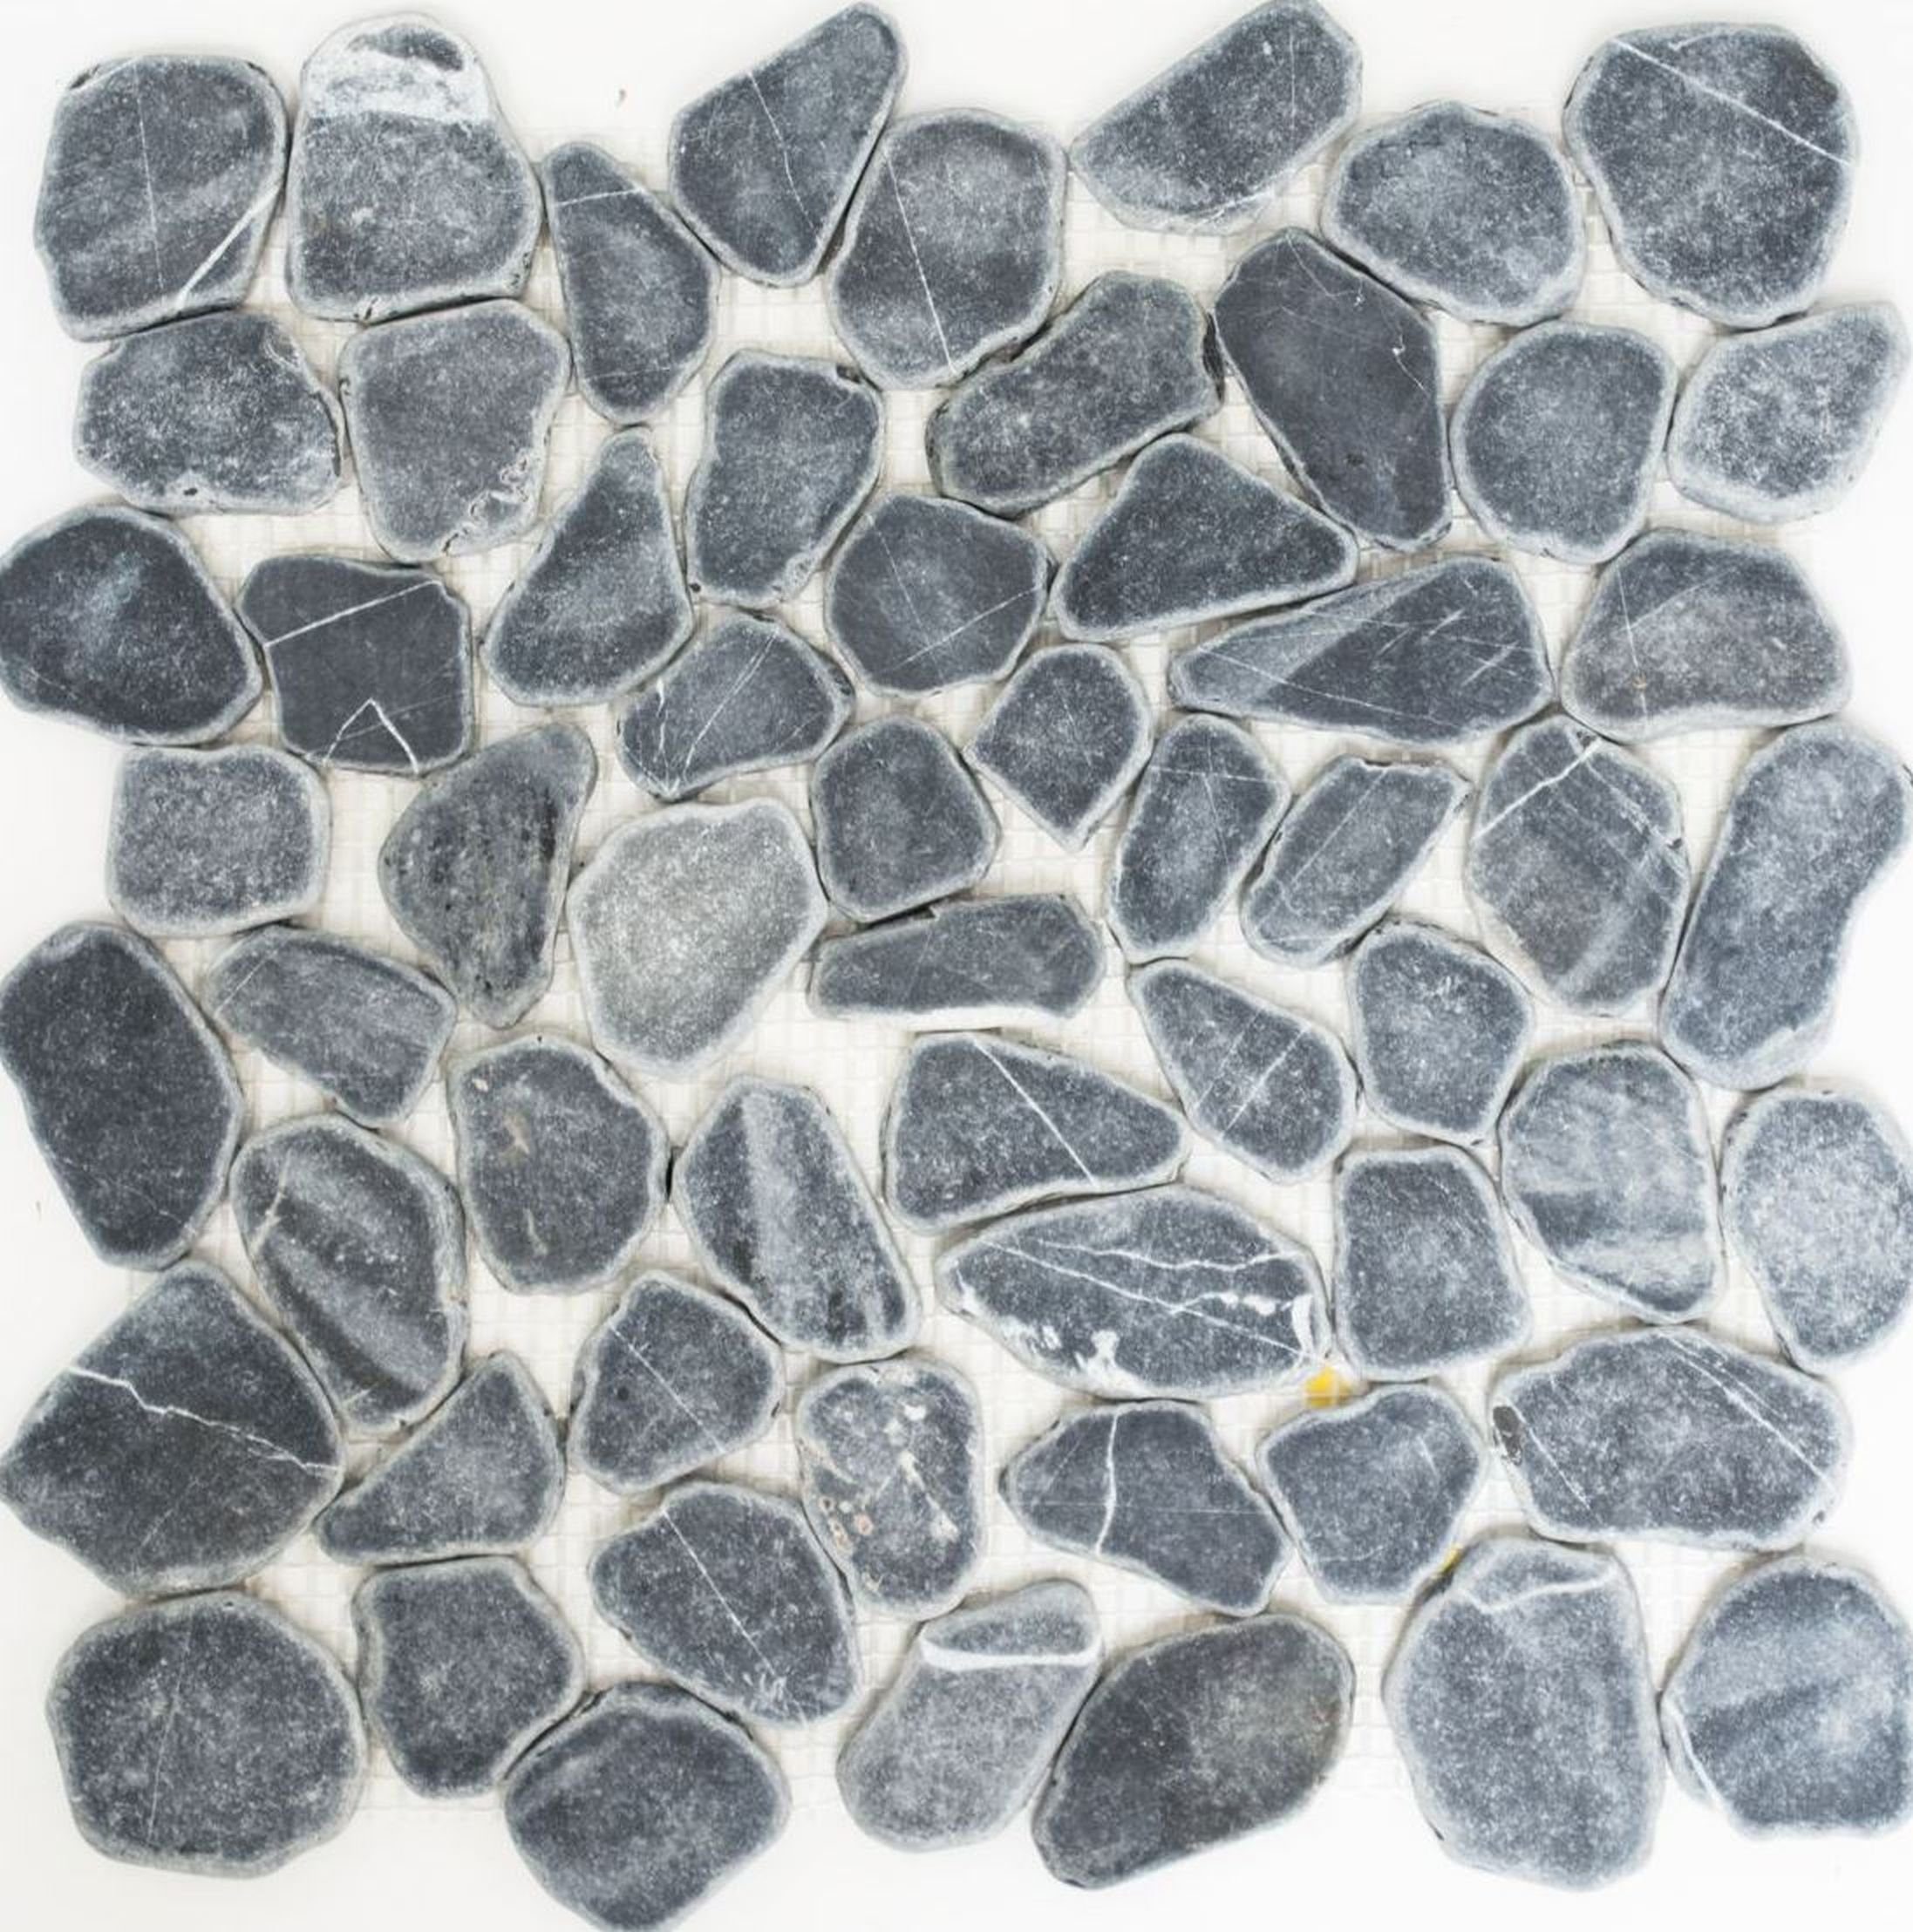 schwarz Duschtasse geschnitten Flußkiesel Mosani Mosaikfliesen grau anthrazir Duschwand